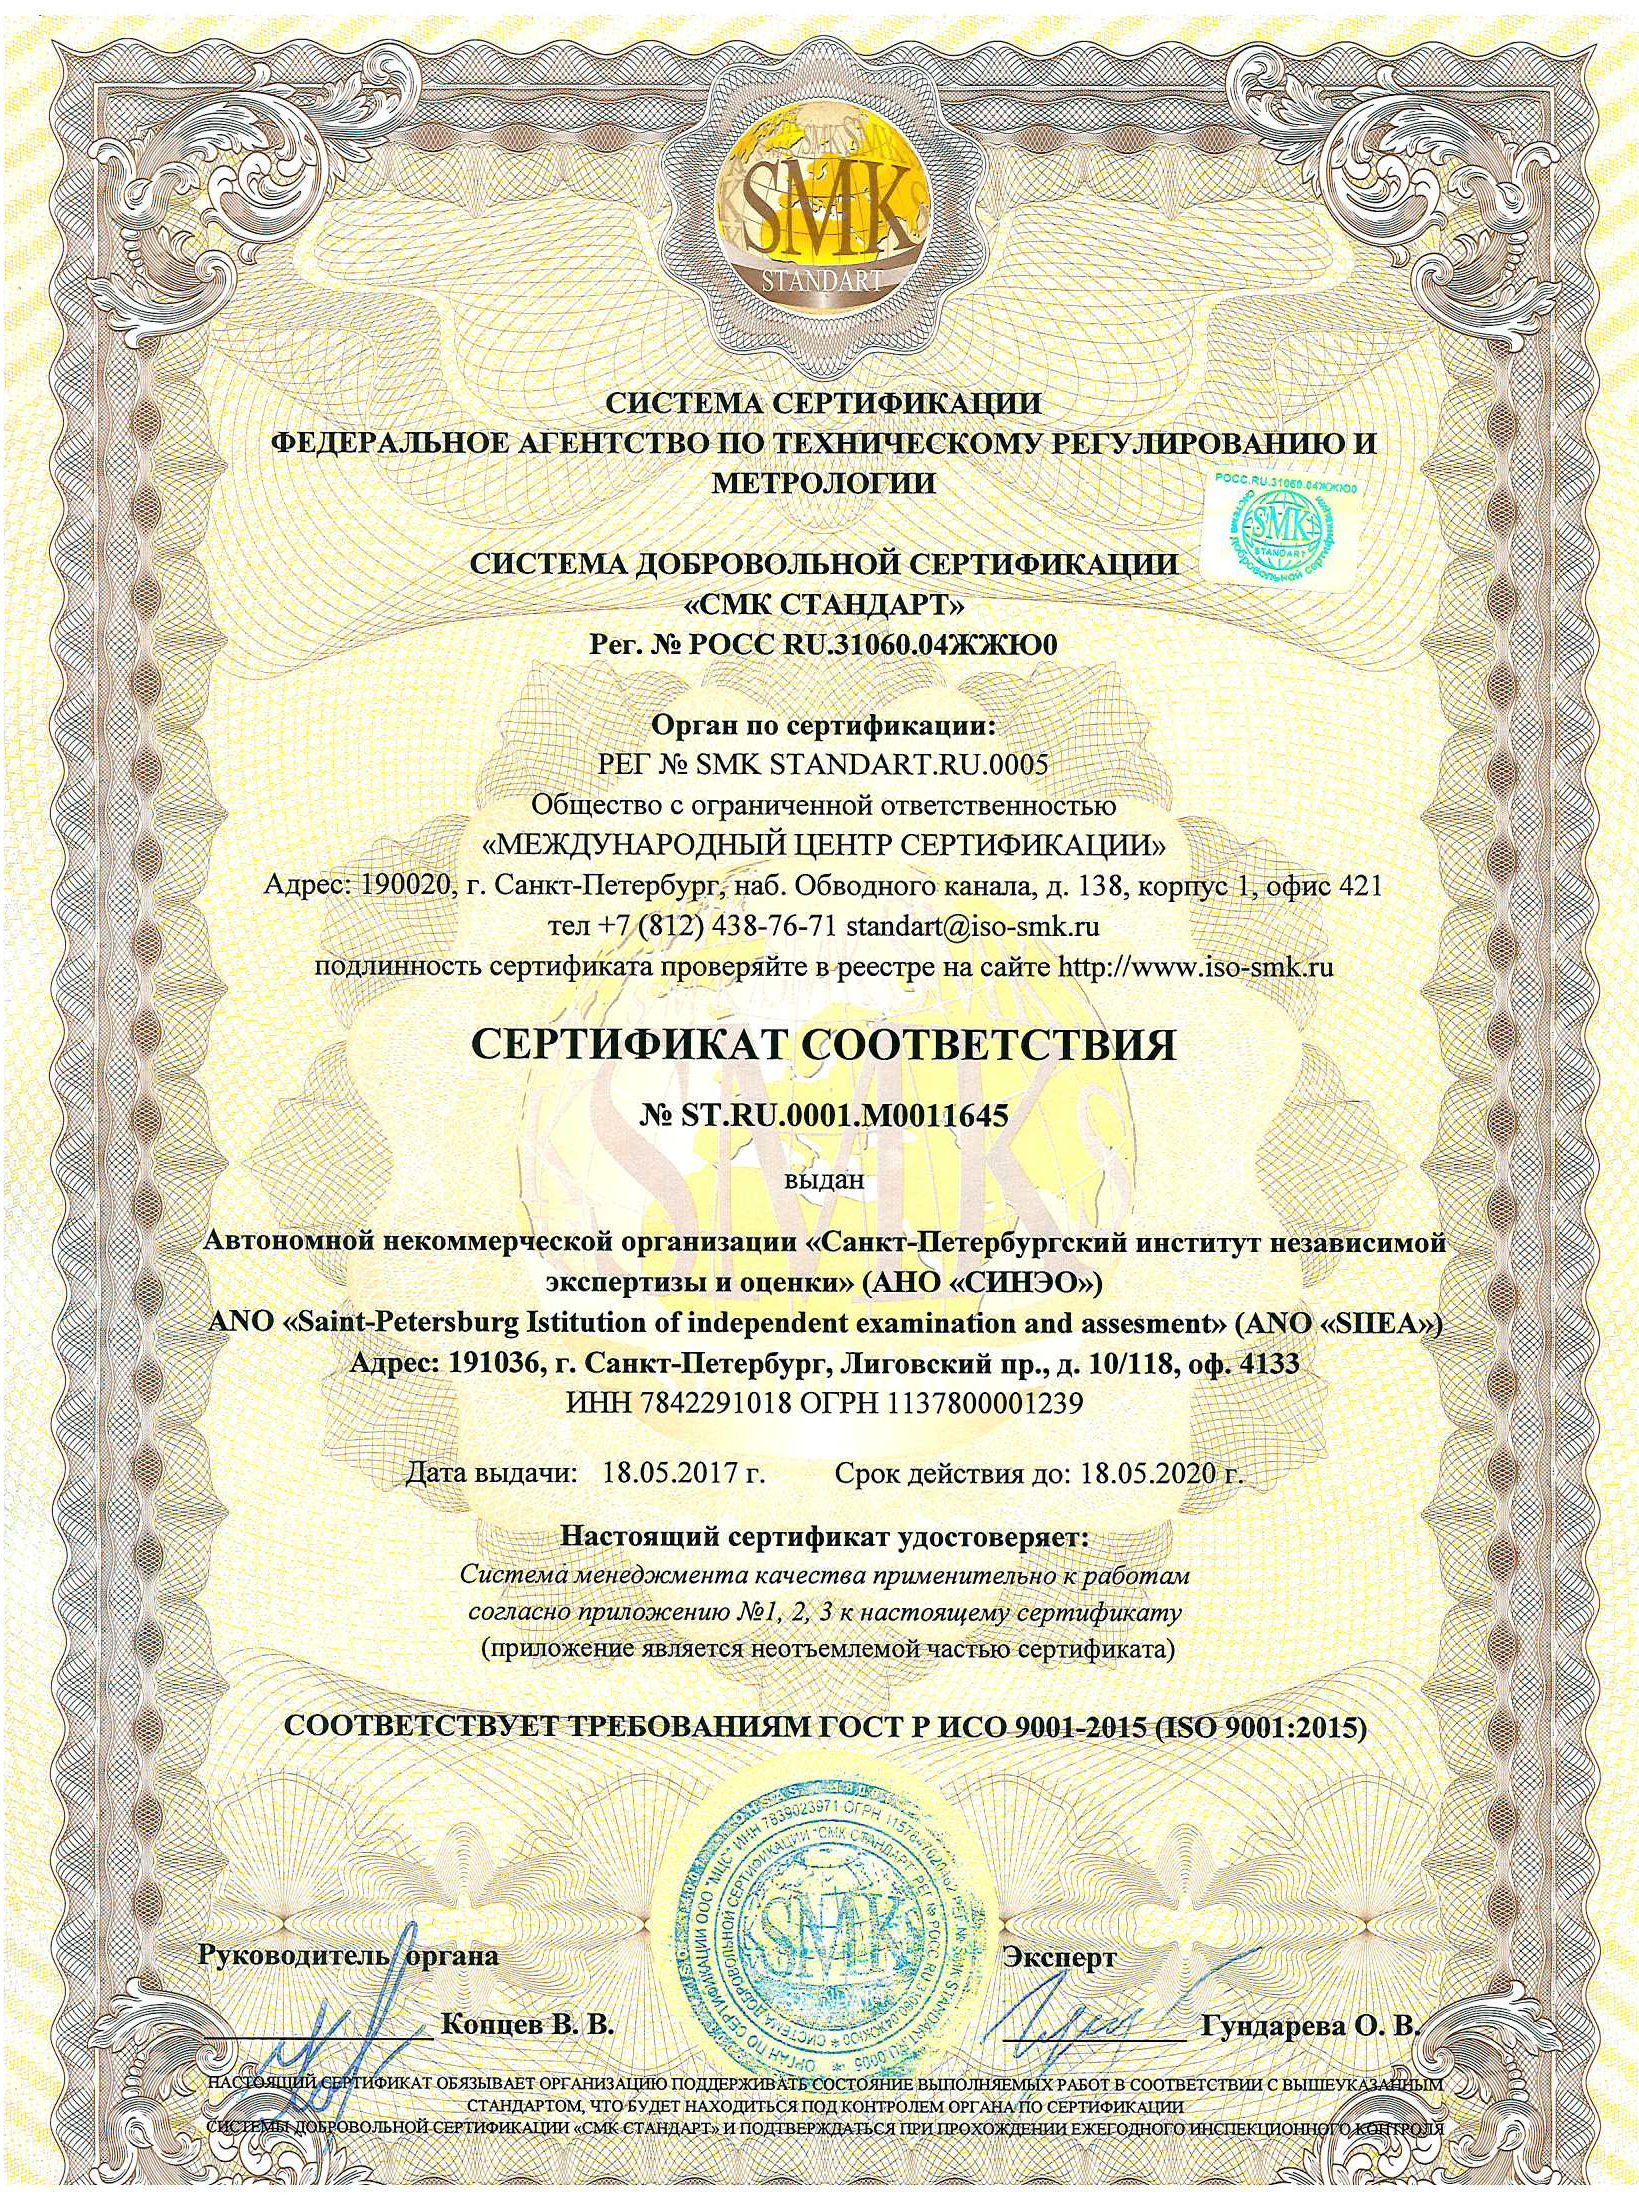 Все услуги СИНЭО сертифицированы ГОСТ Р ИСО 9001-2015